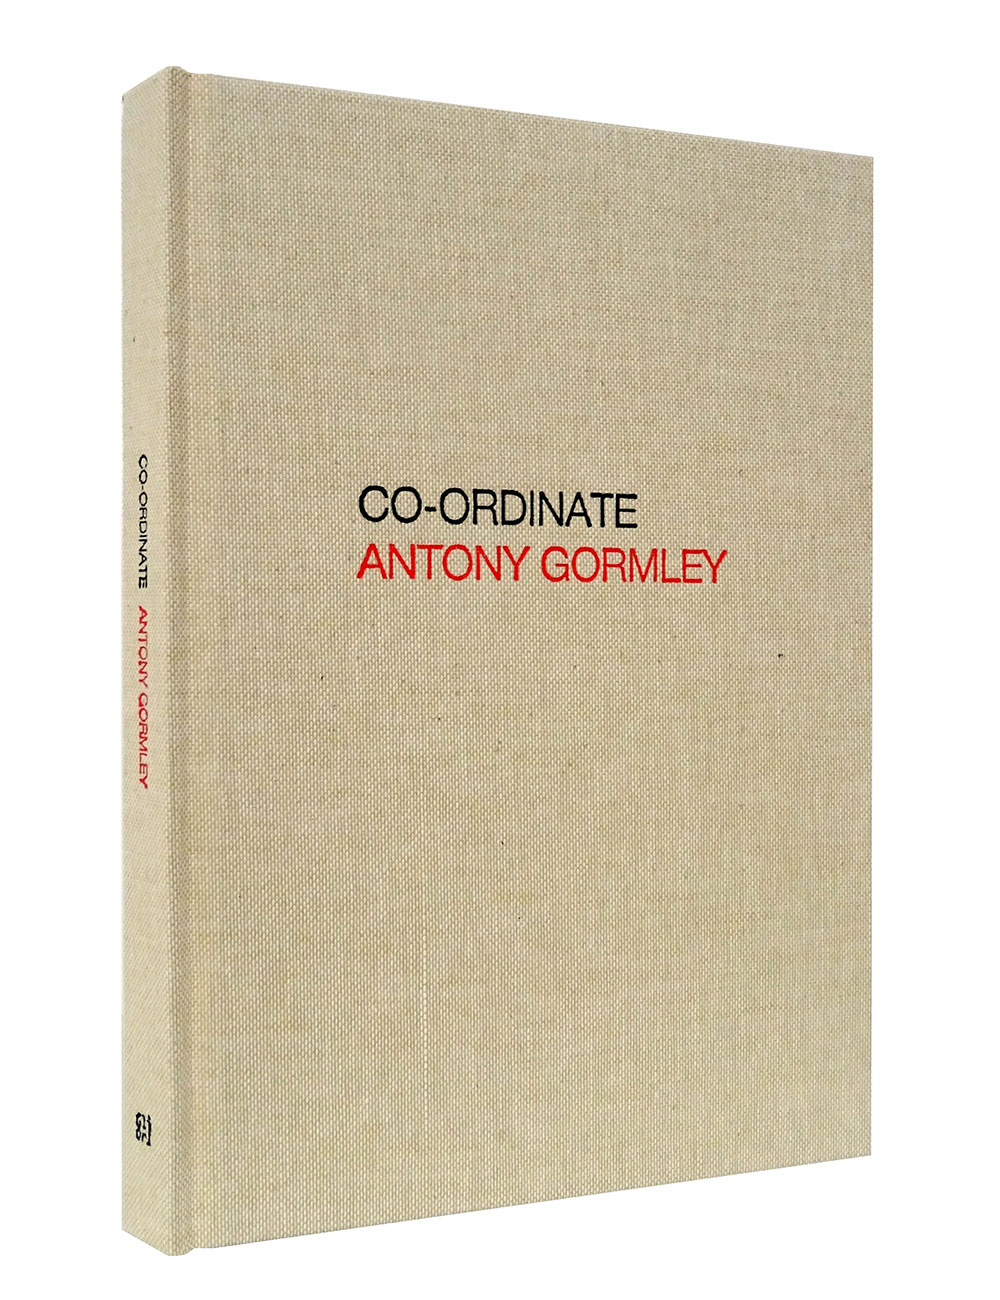 ANTONY GORMLEY. CO-ORDINATE, 2018